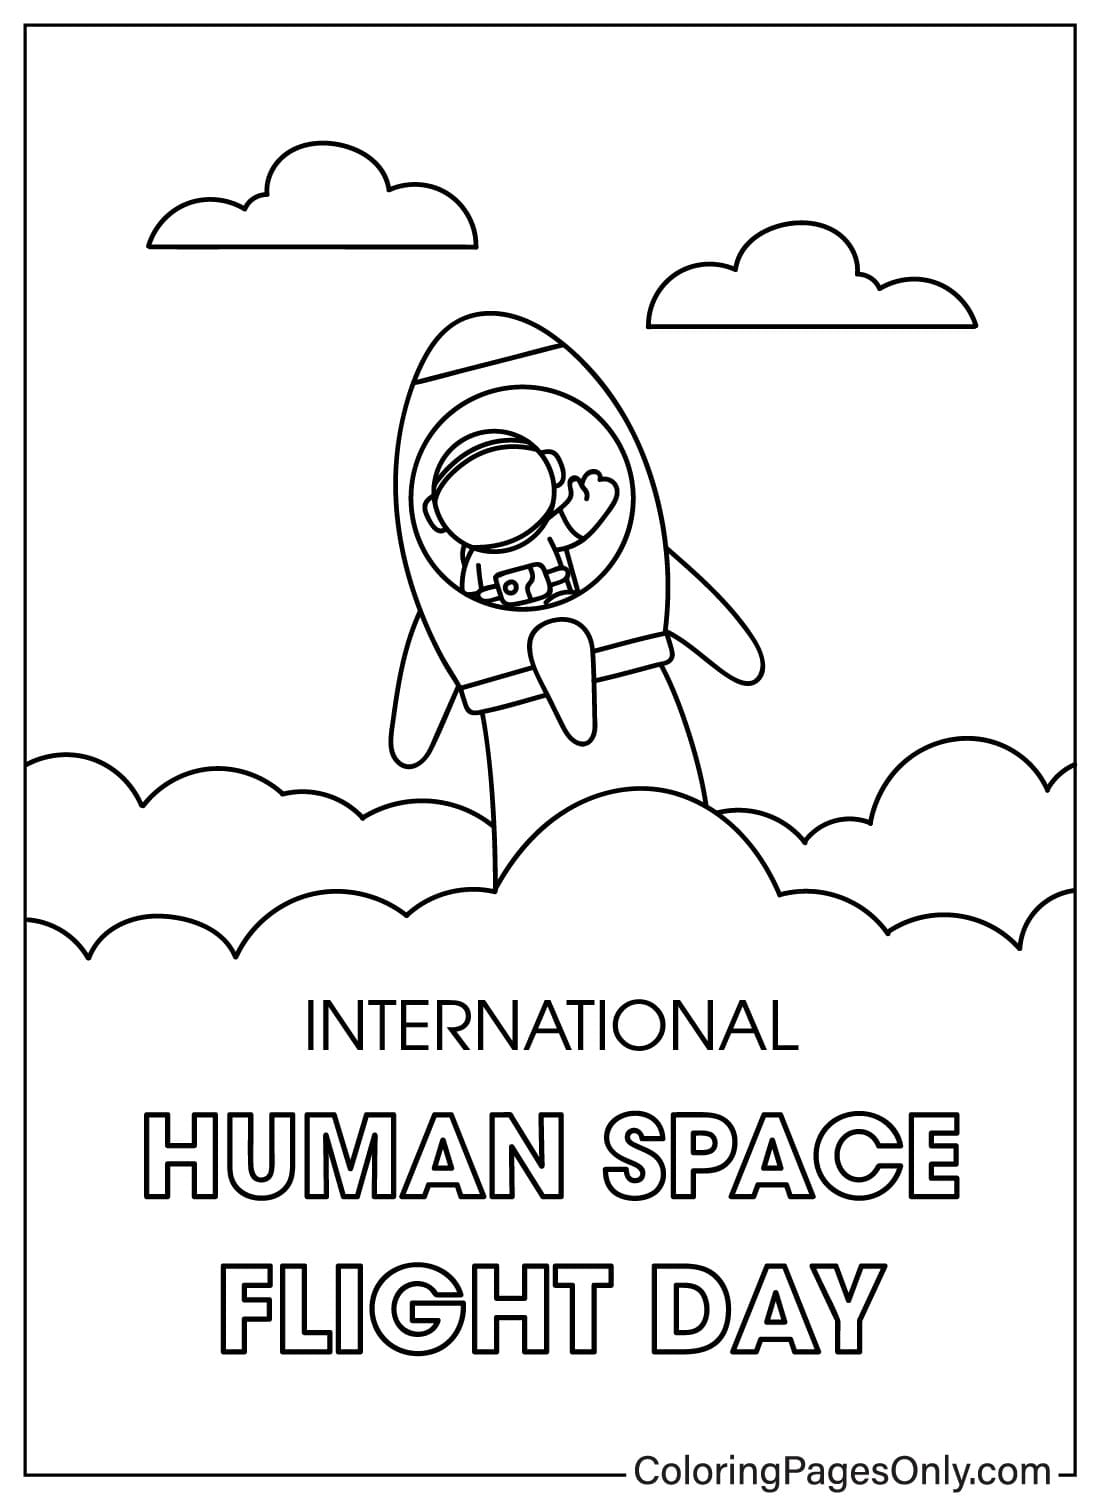 اليوم الدولي لرحلة الإنسان إلى الفضاء صور ملونة من اليوم الدولي لرحلة الإنسان إلى الفضاء